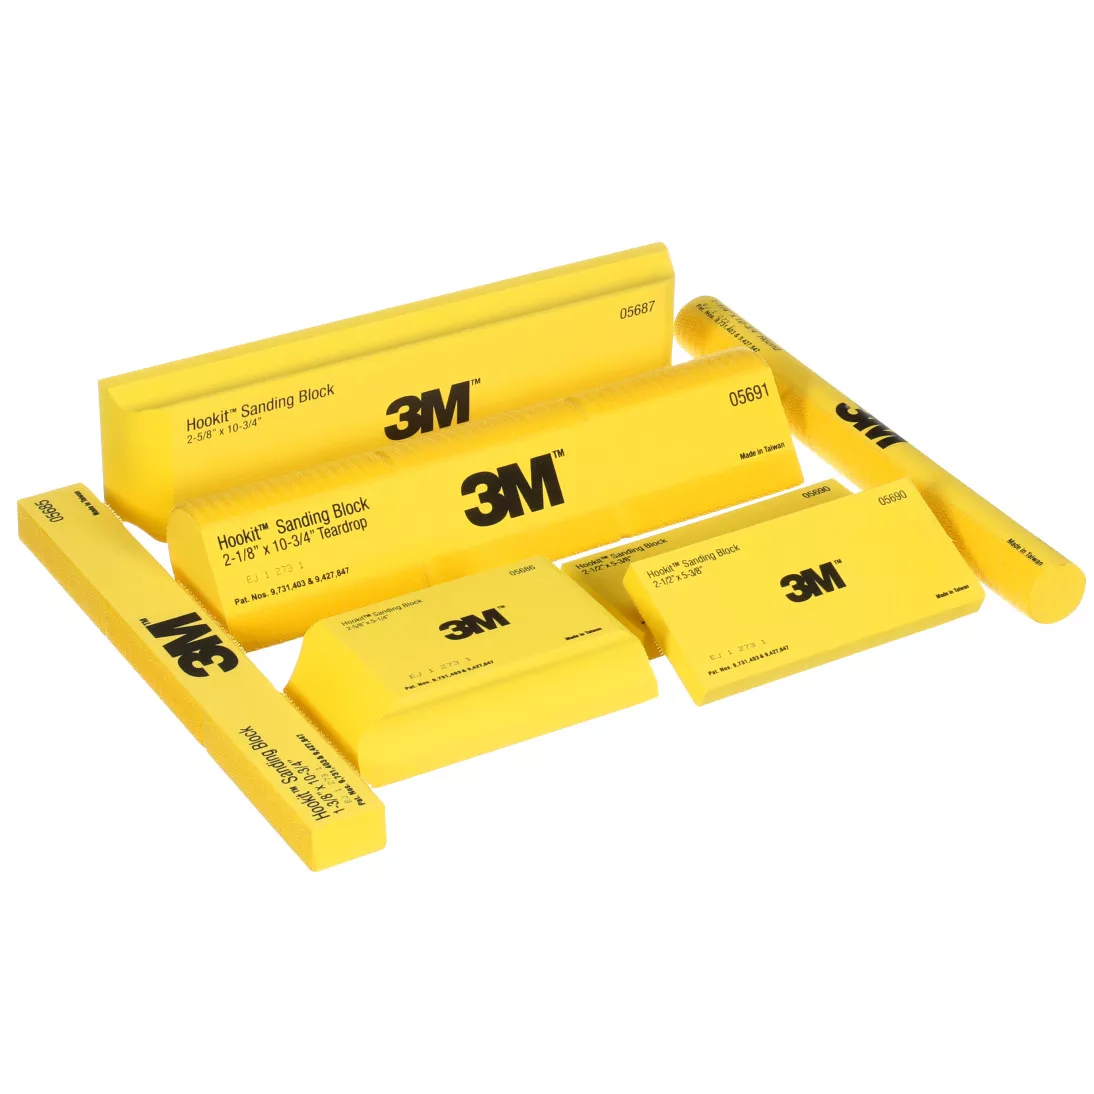 3M™ Stikit™ Sanding Stick Kit, 05671, 10 per case